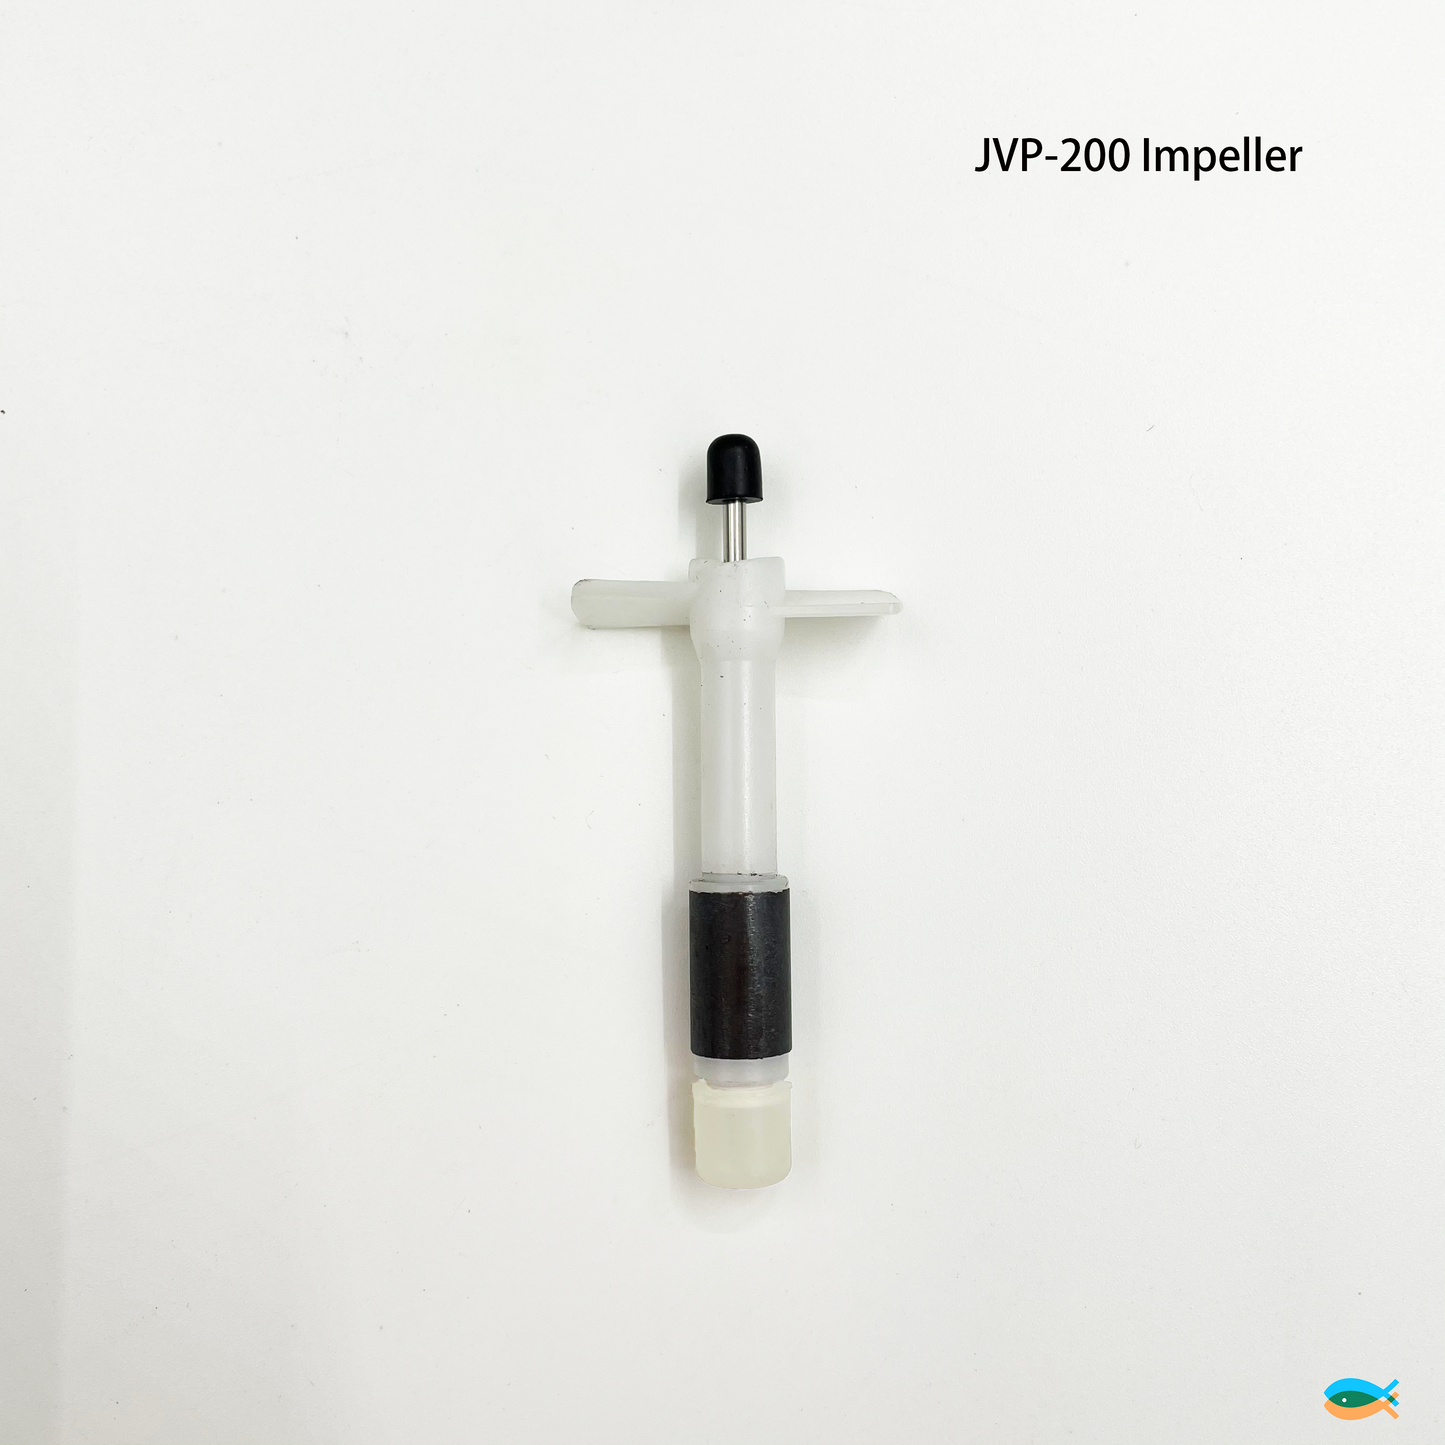 Genuine SUNSUN JVP-101/JVP-200/JVP-201/JVP-202 Wave Maker Impeller